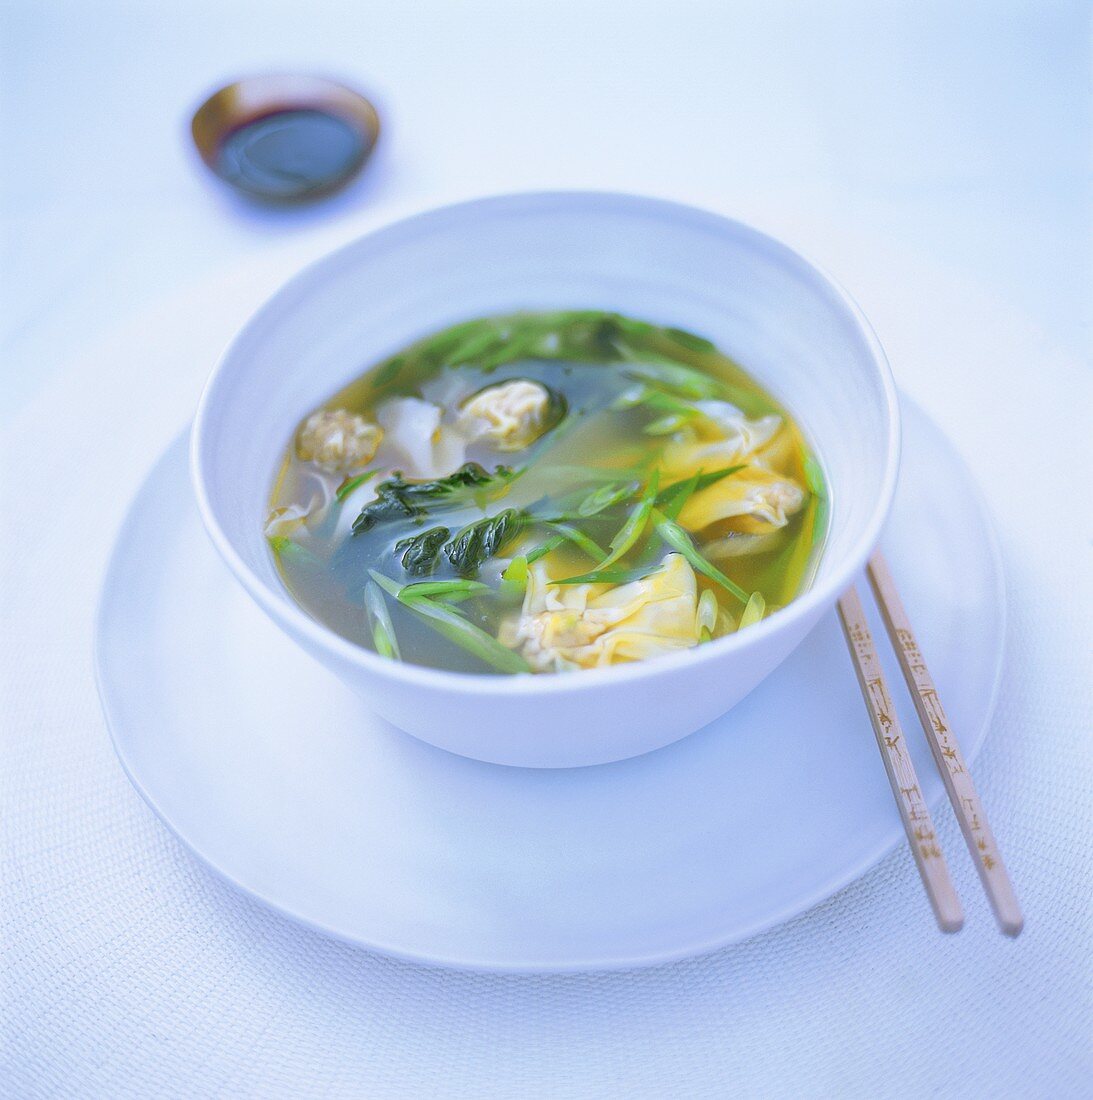 Wan tan soup with pak choi